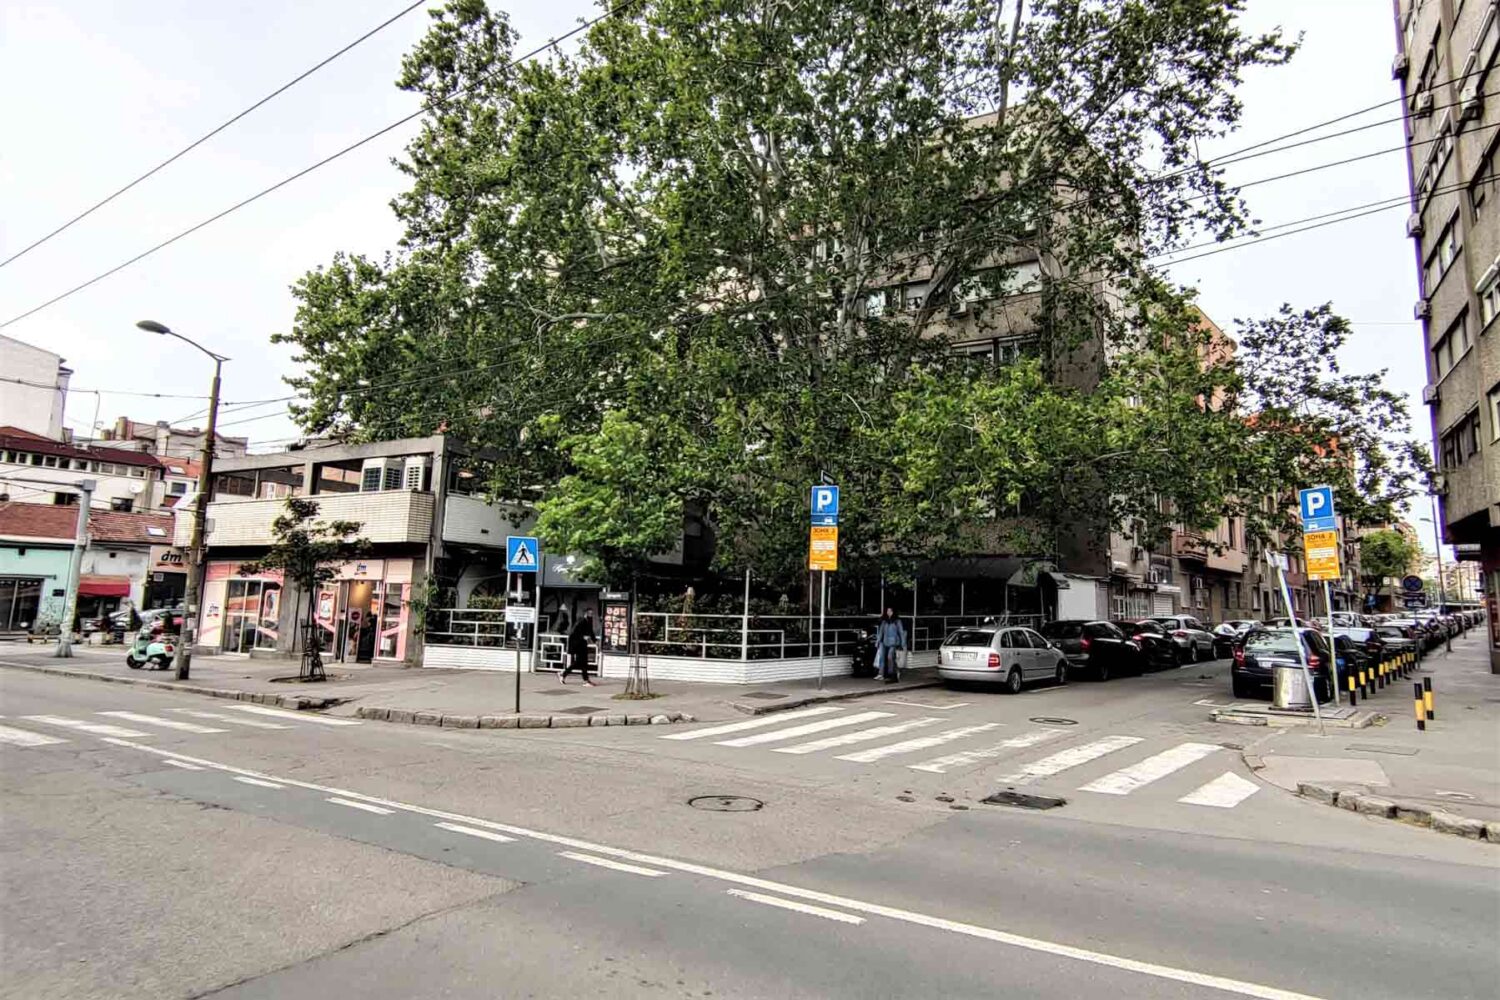 Bistro Trandafilović je jedan od najpopularnijih restorana Beograda